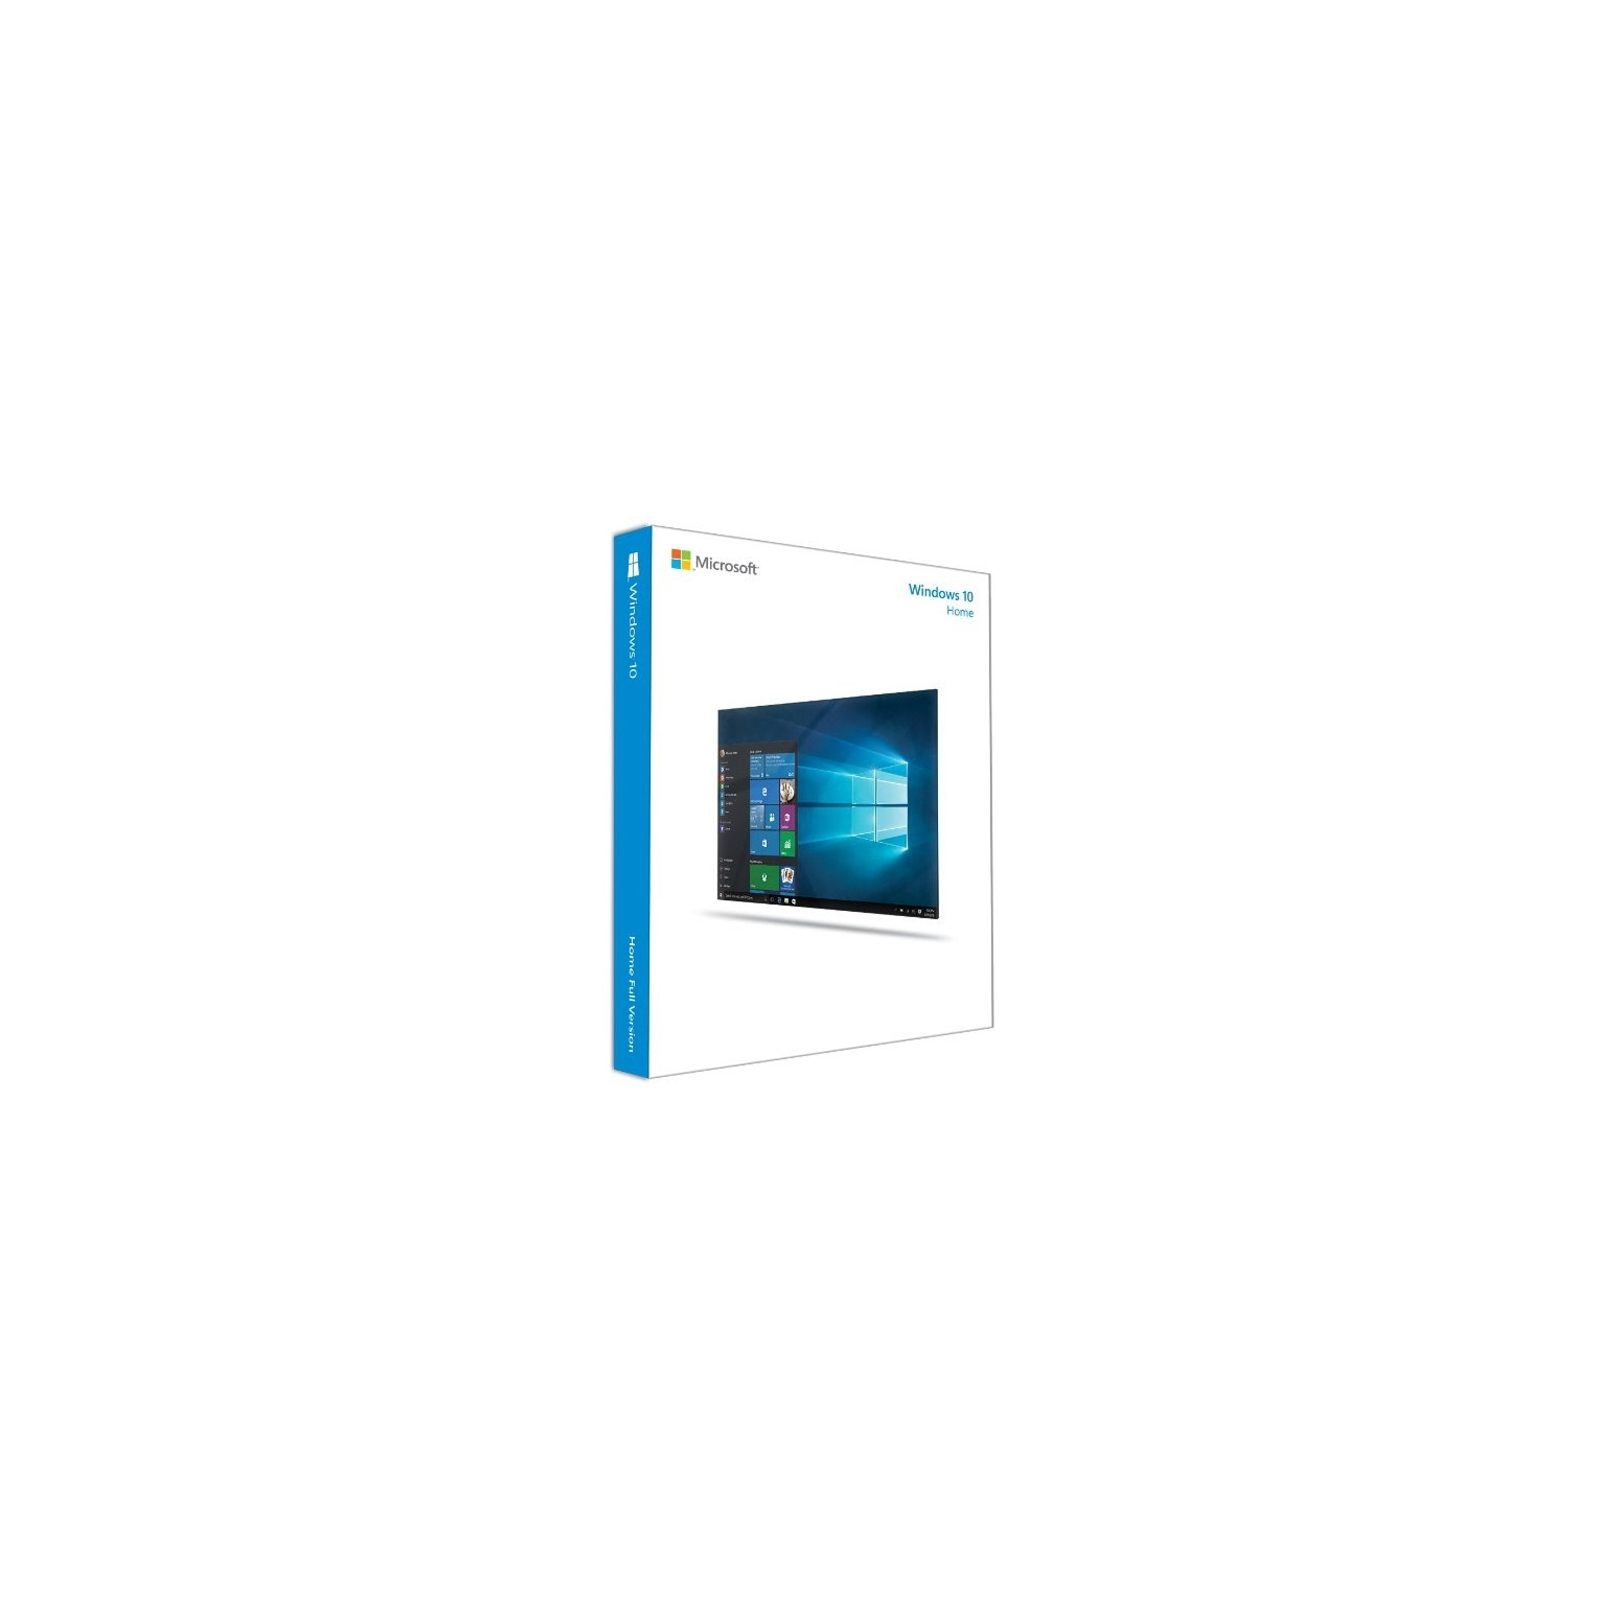 Операционная система Microsoft Windows 10 Home 32-bit/64-bit Russian USB (KW9-00254)